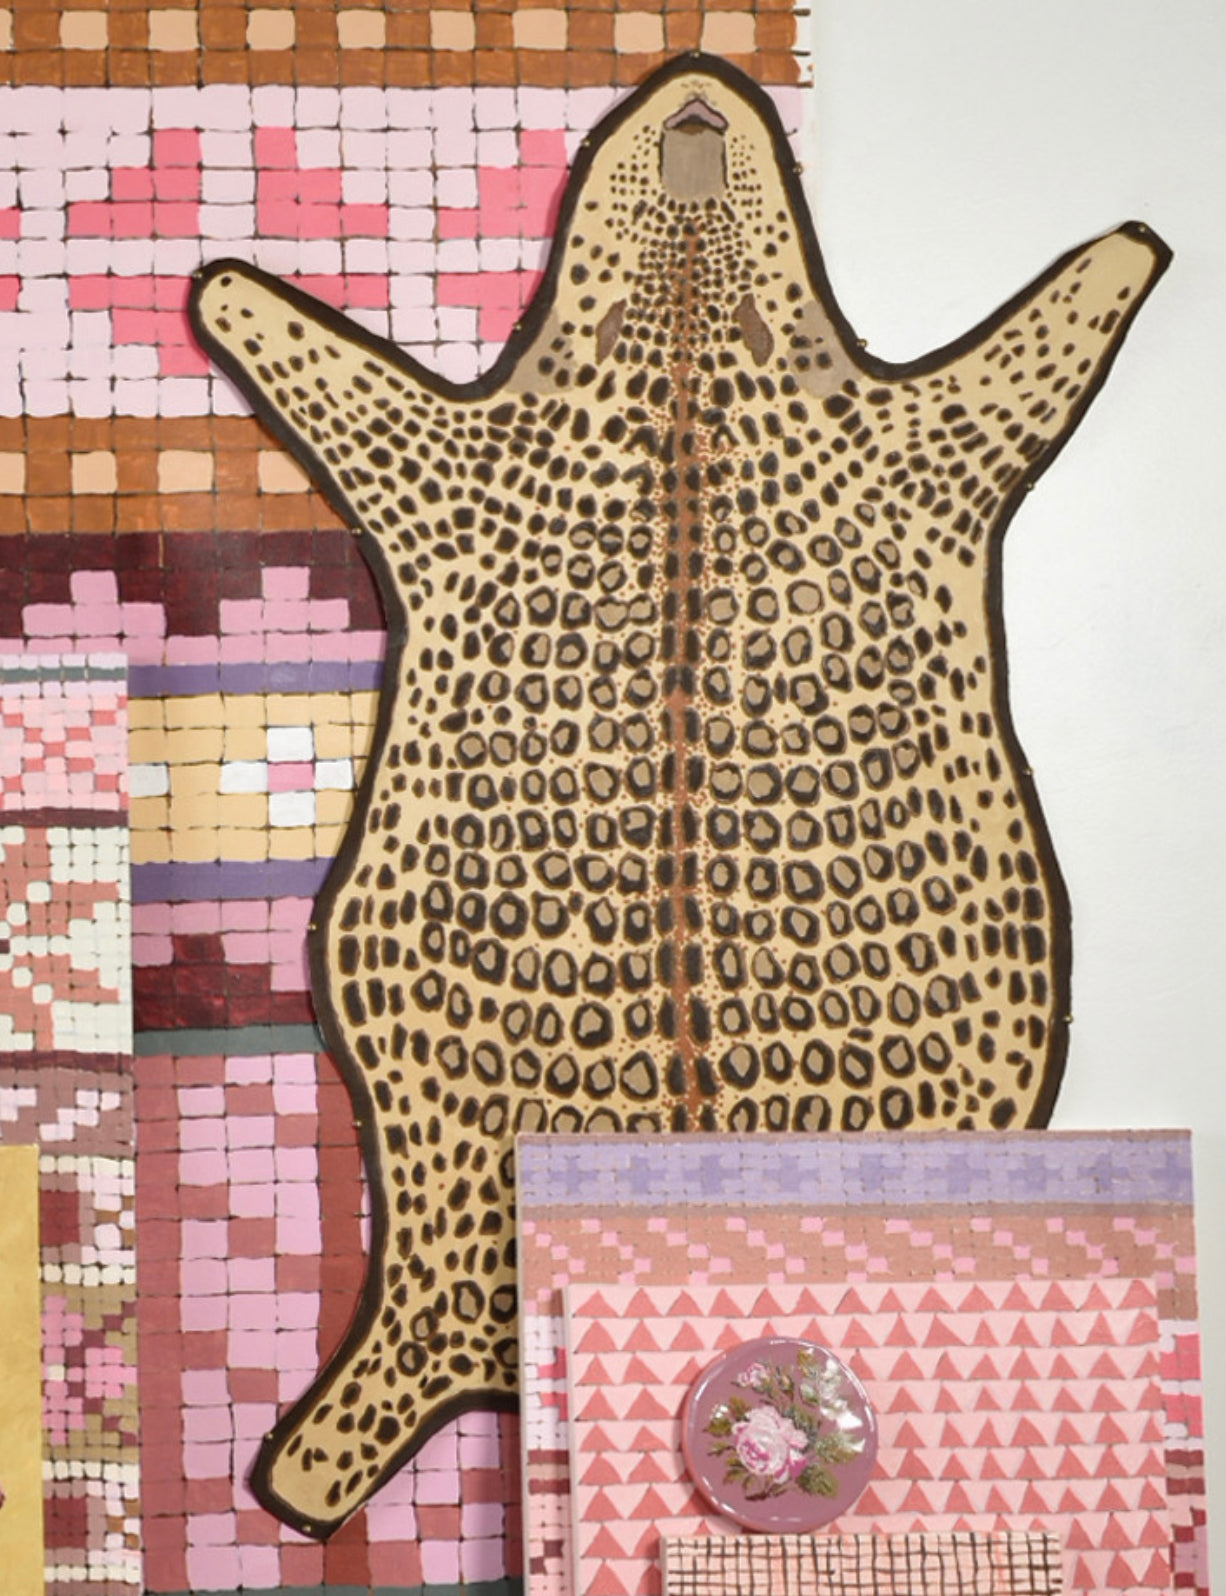 Kirstin Lamb, "Leopard Rug"